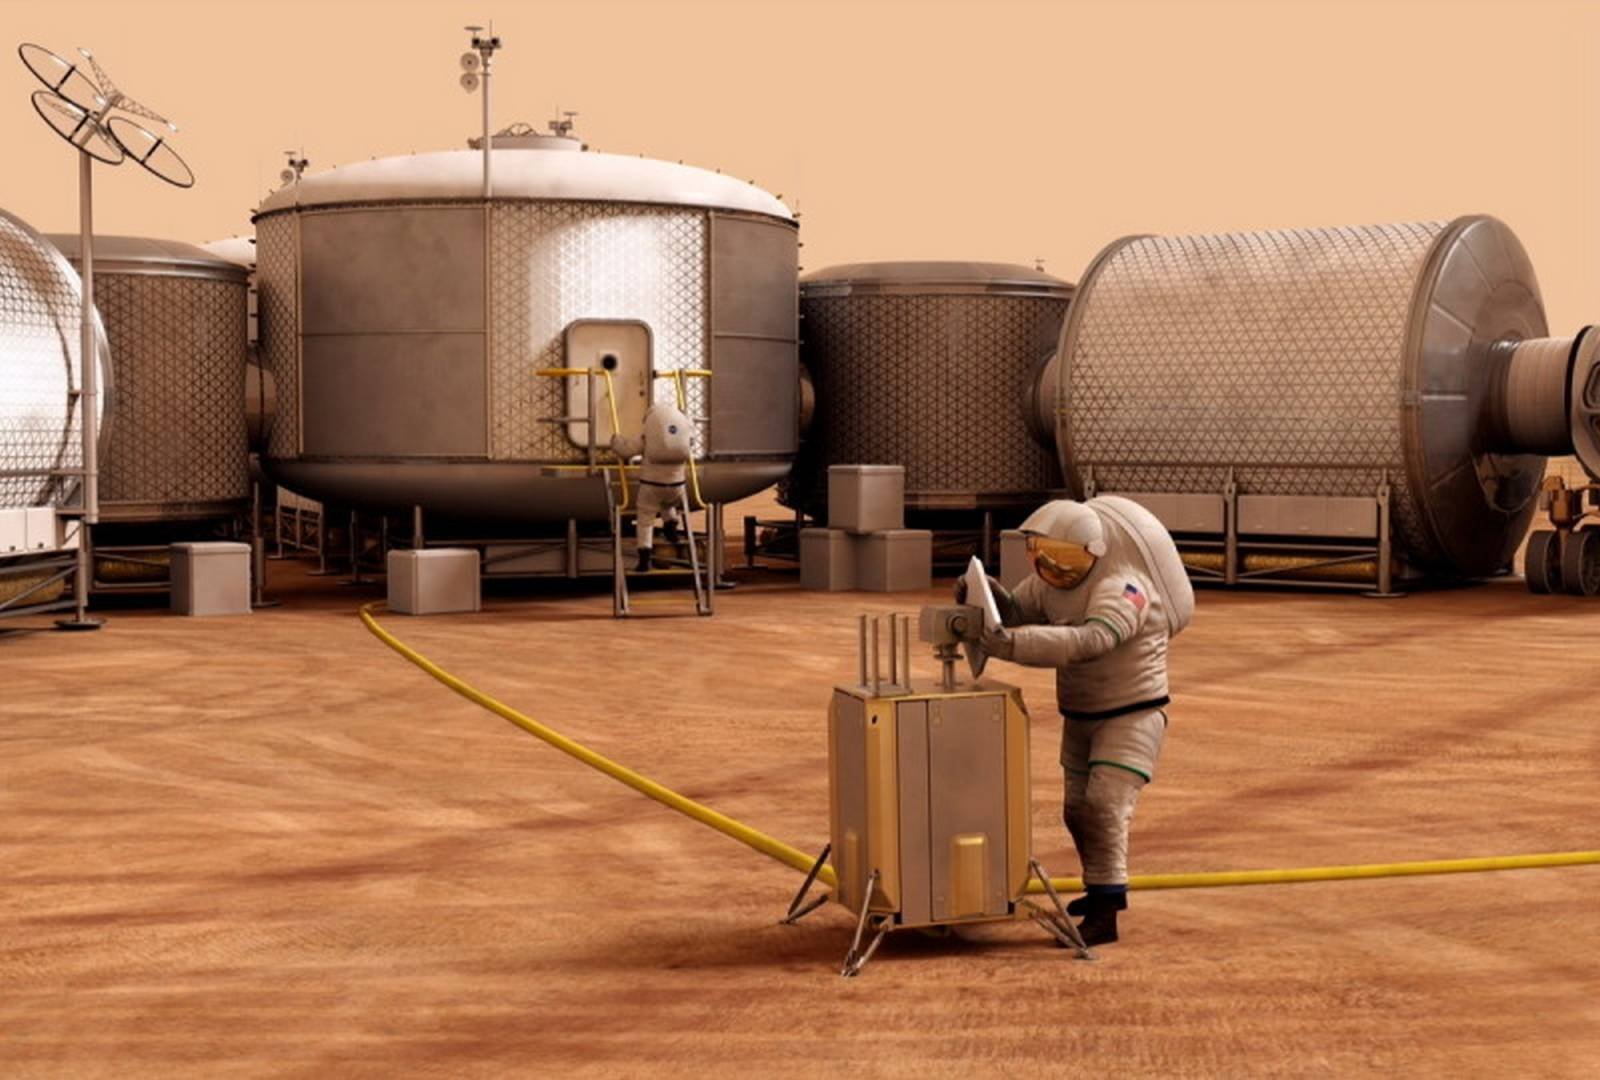 Immagine di Buzz Aldrin, l'umanità dovrebbe prepararsi a migrare su Marte